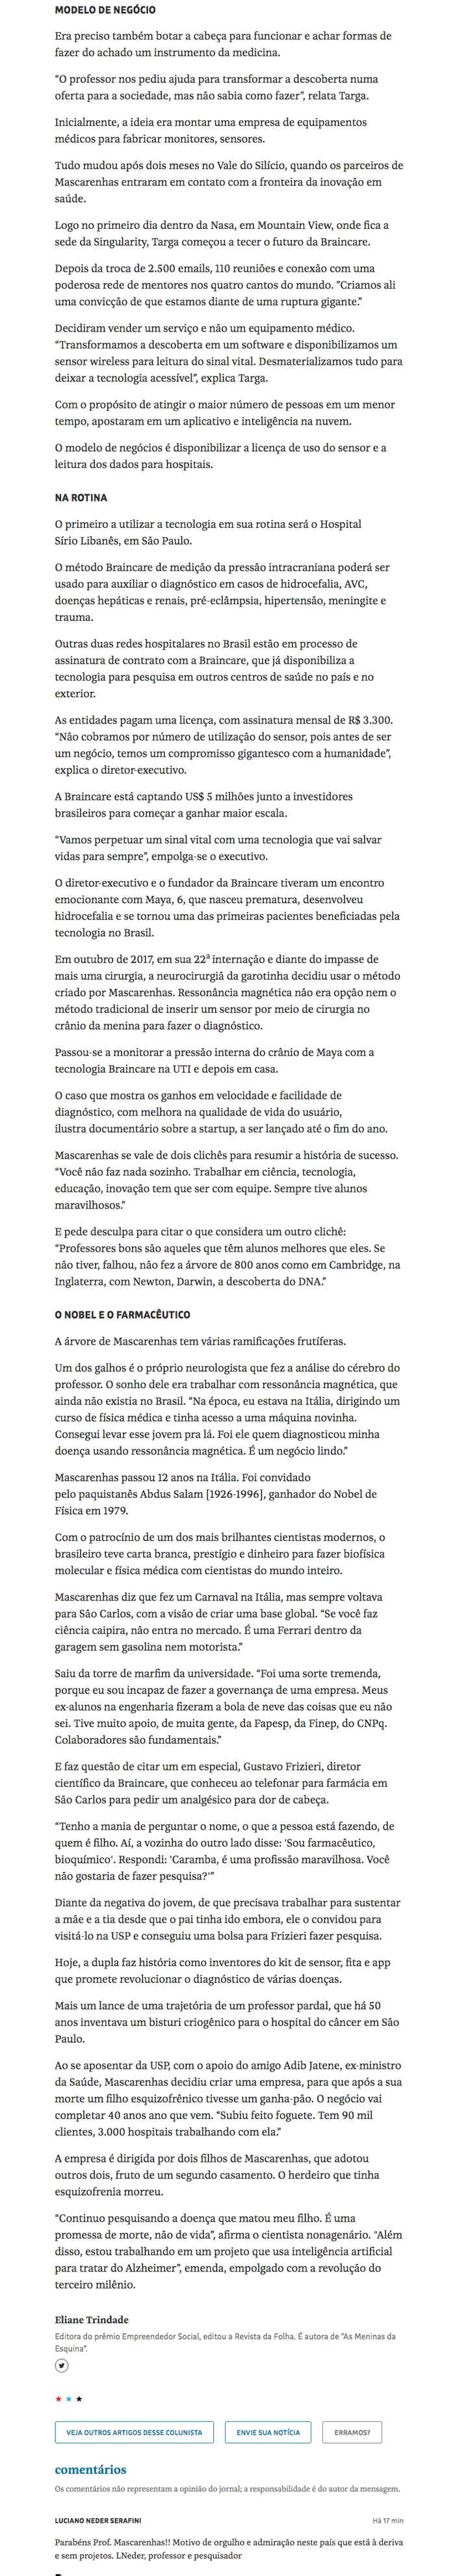 Sergio Mascarenhas - Cérebro a serviço da revolução médica - Pág.2